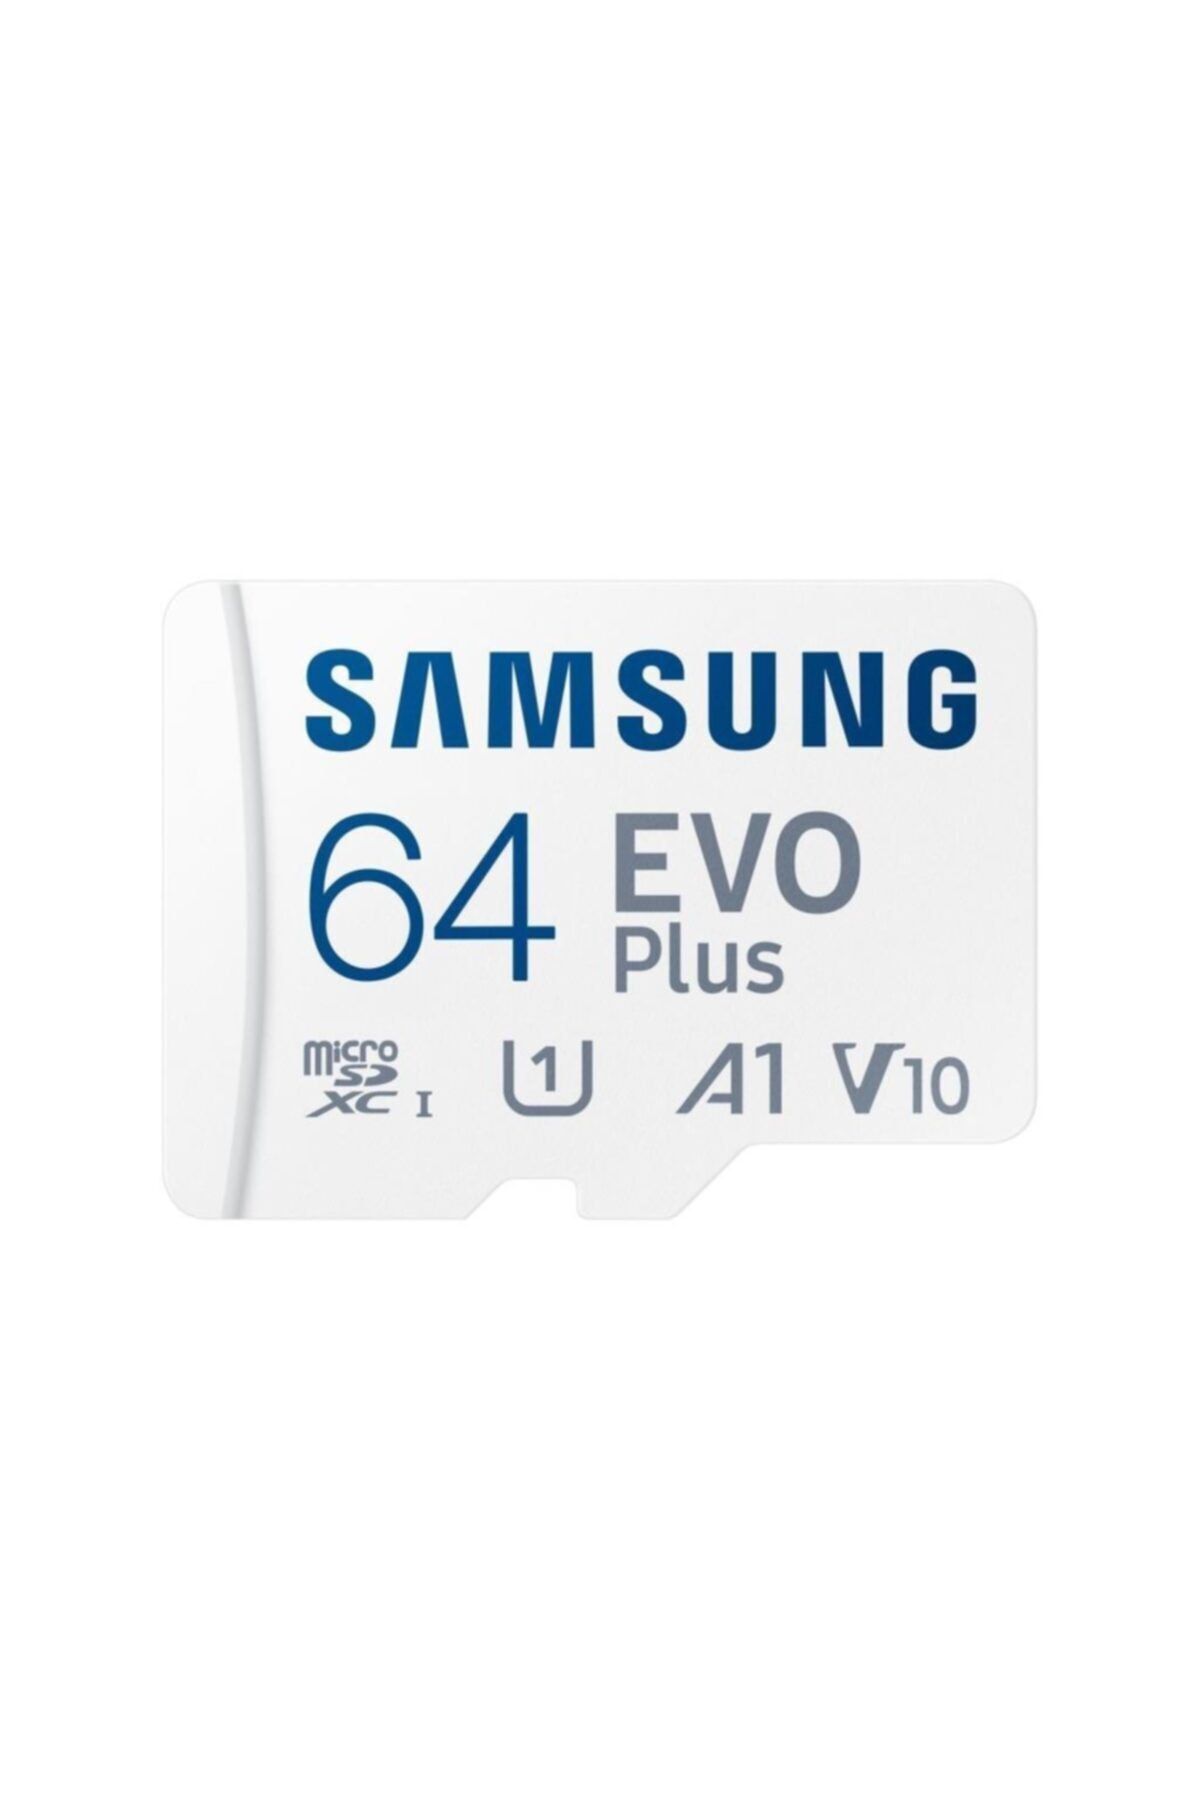 Samsung Evo Plus Microsd Hafıza Kartı 64 GB-MC64KA/TR - 130 MB/SN